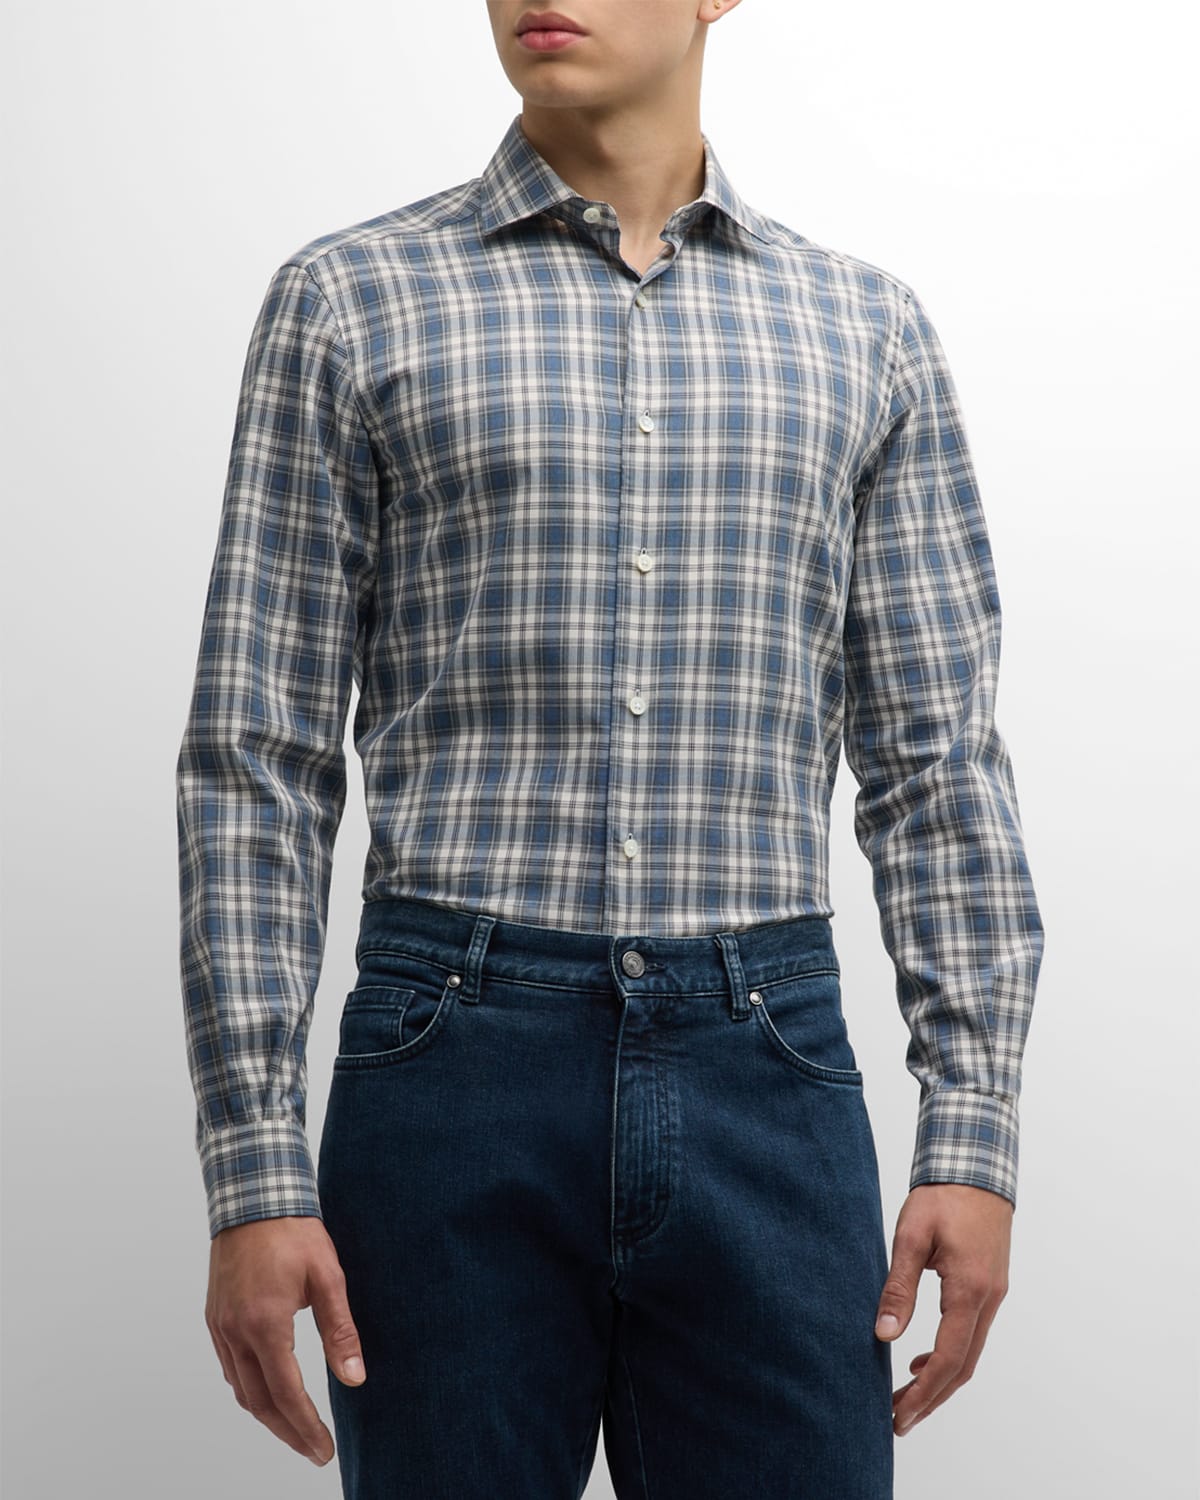 Zegna Men's Flannel Plaid Sport Shirt In Dark Blue Check